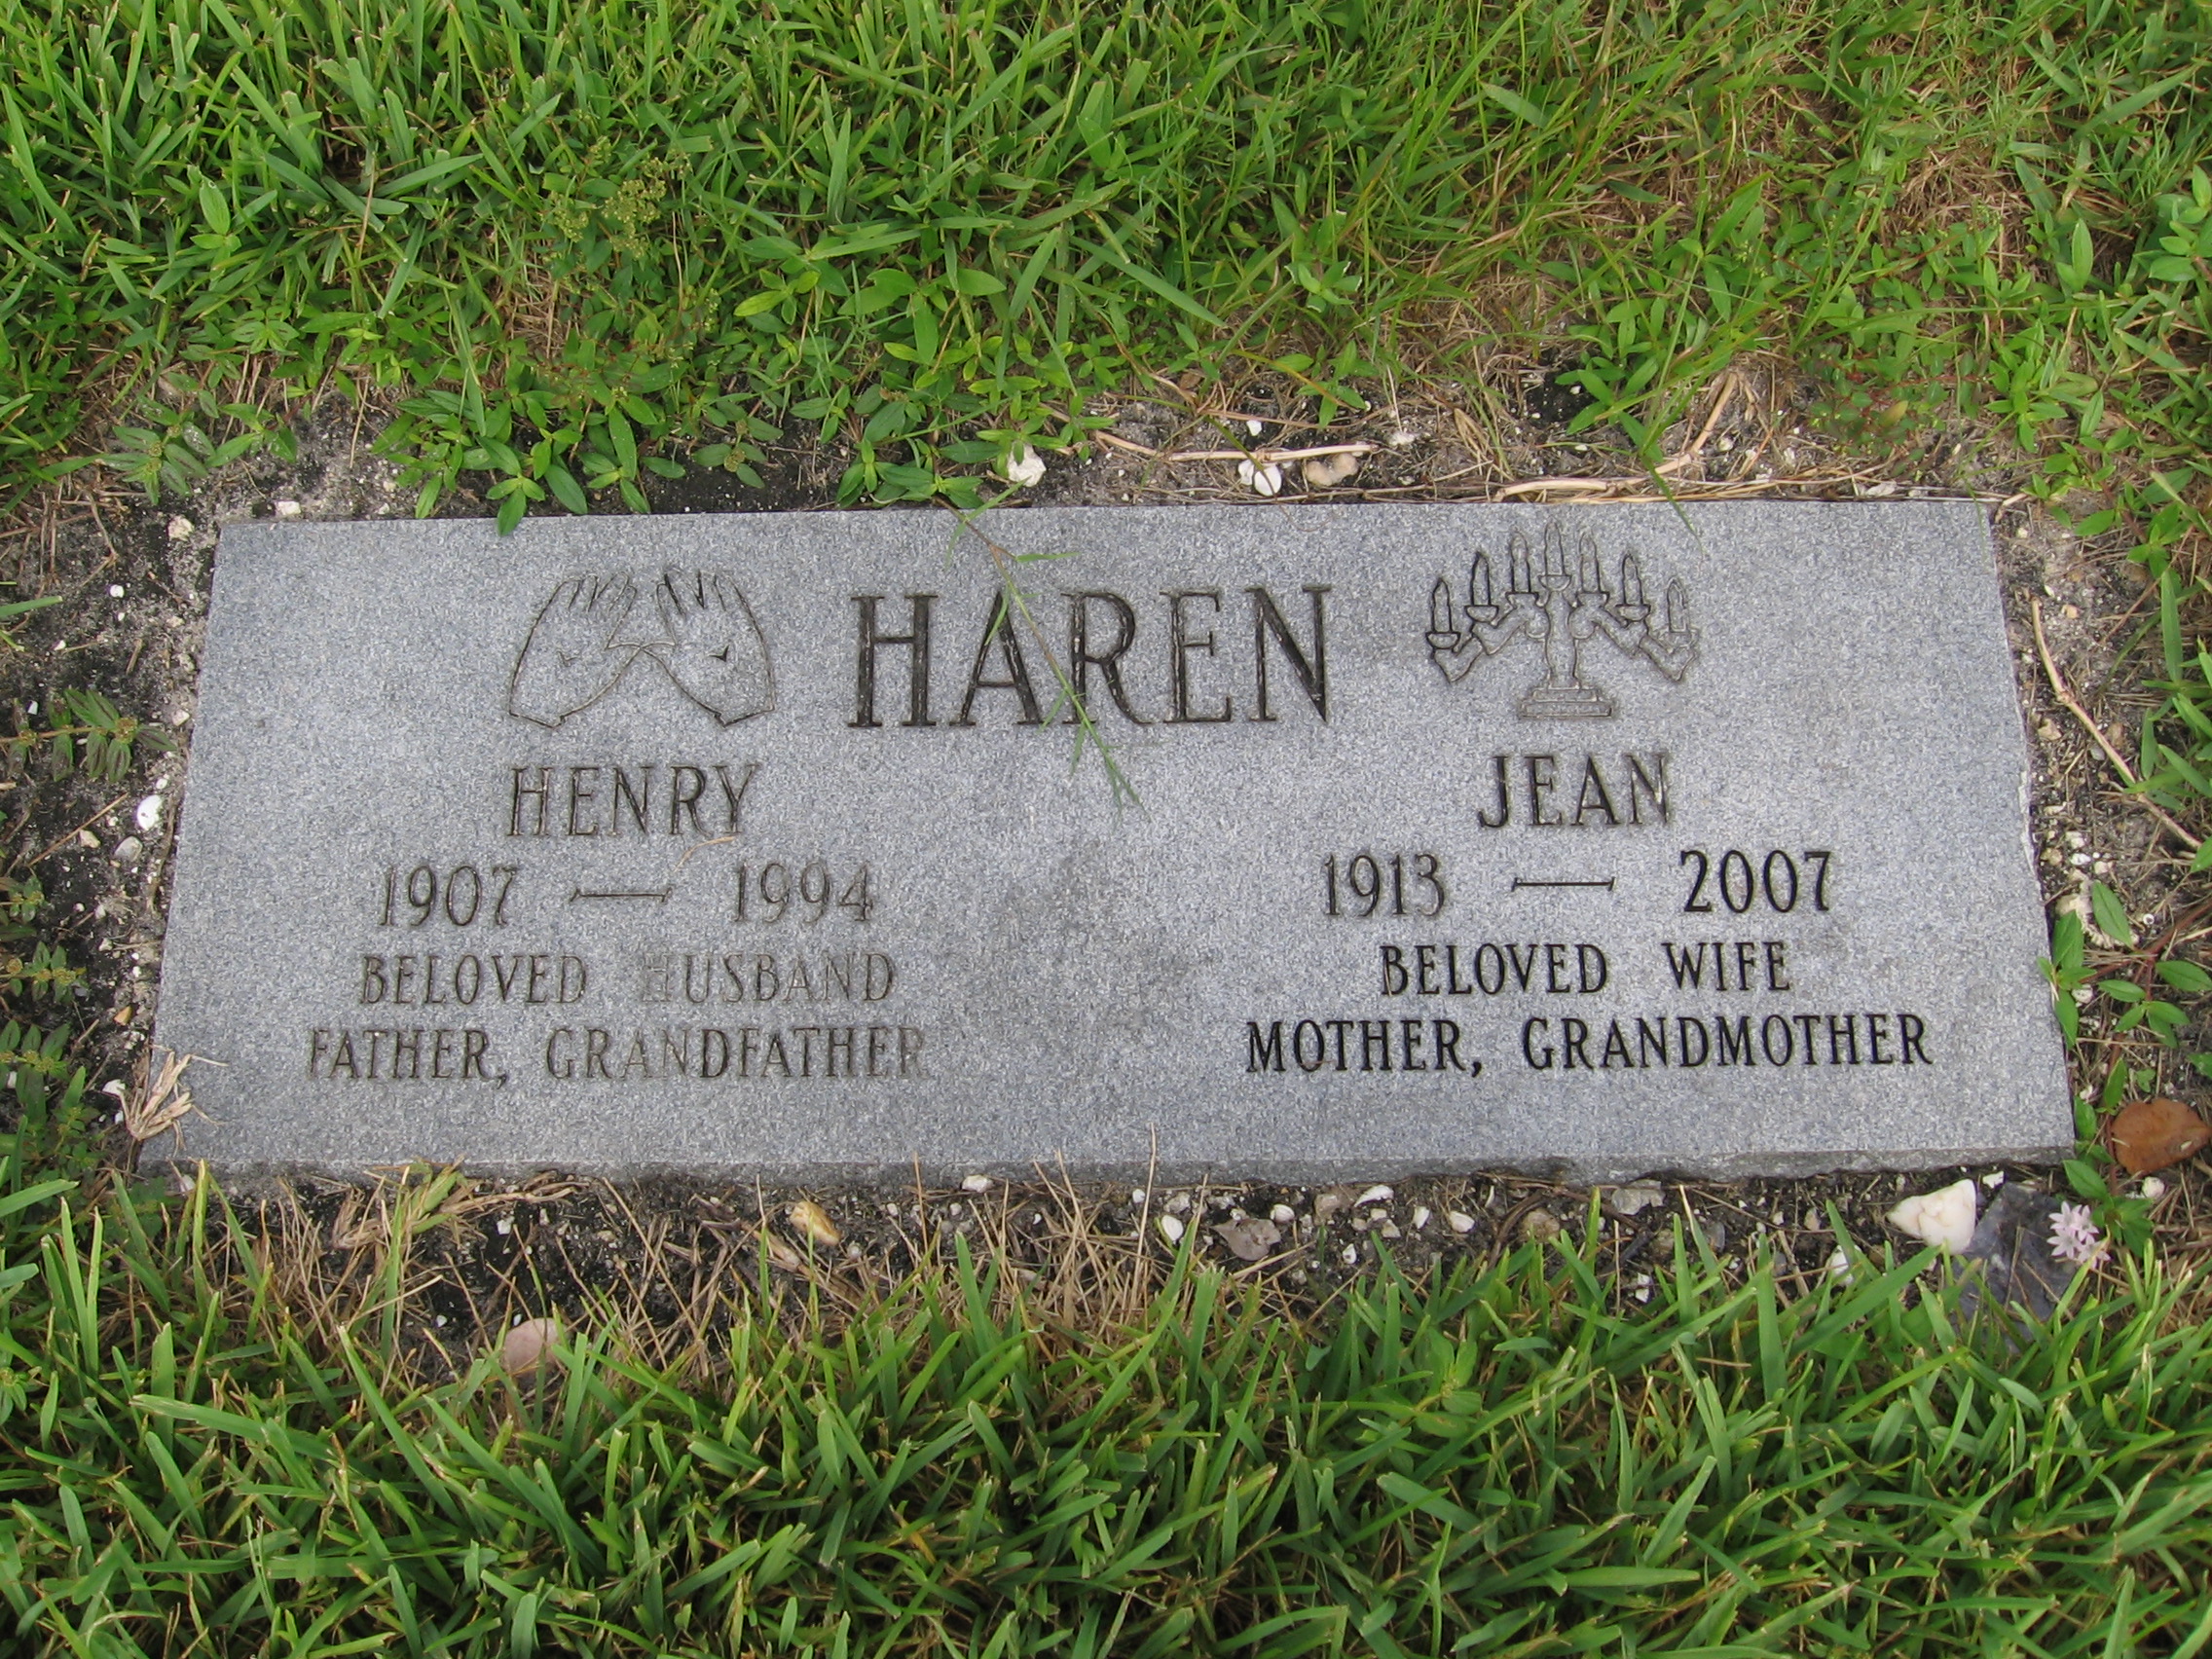 Henry Haren